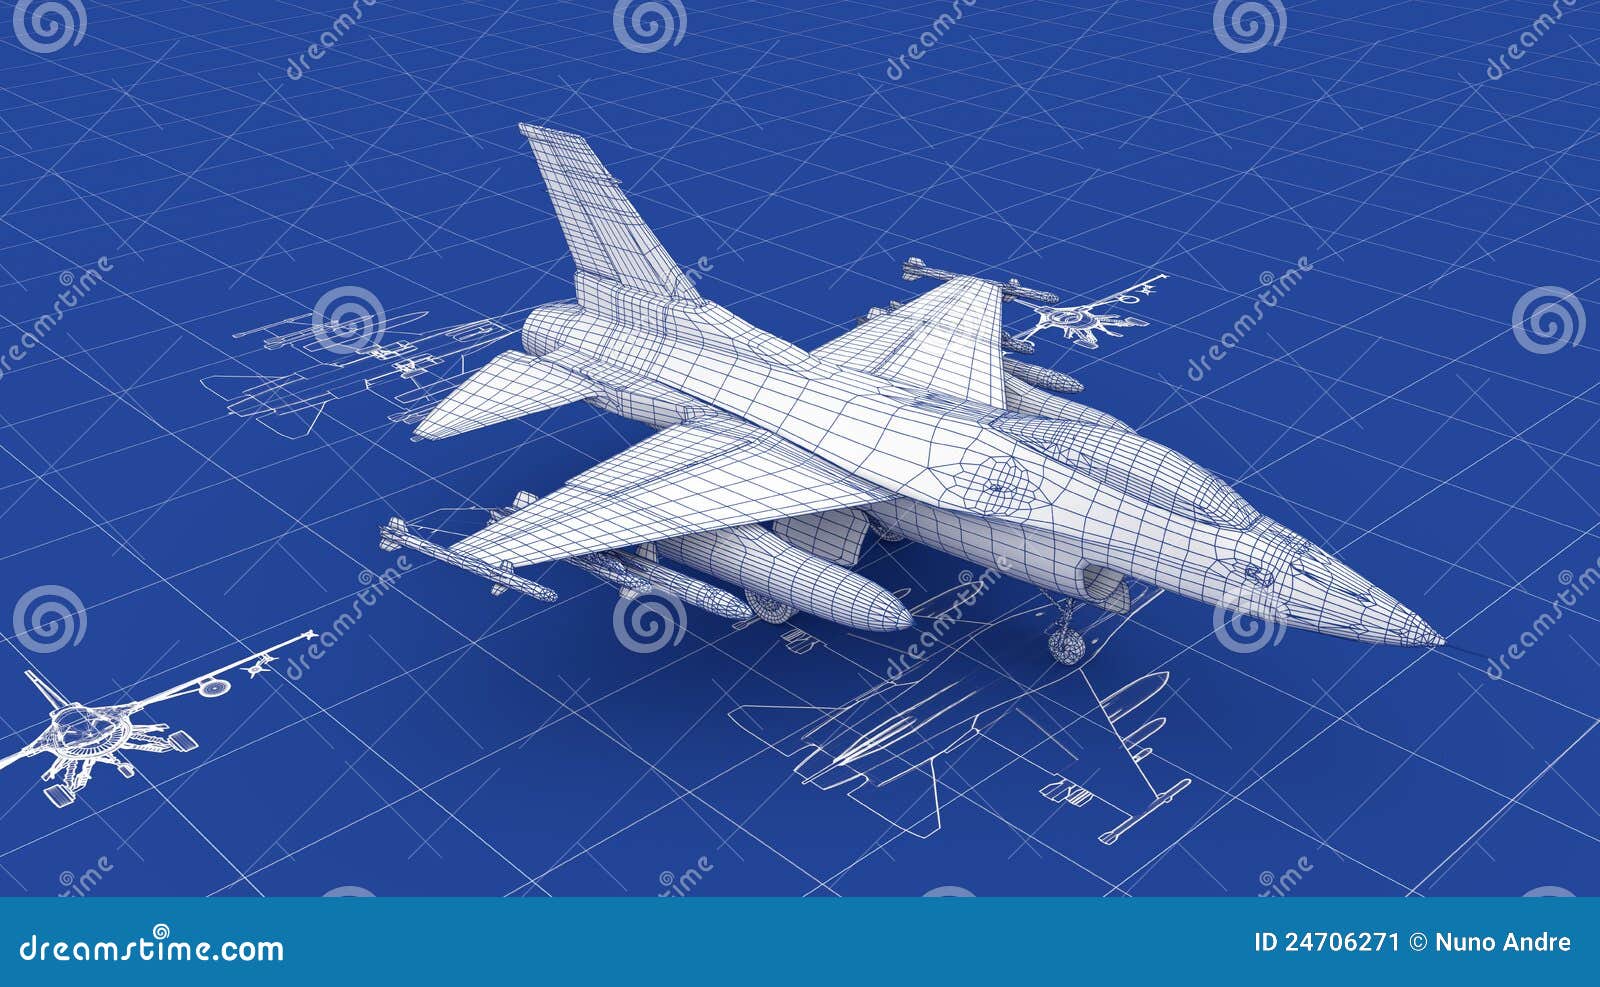 jet fighter aircraft blueprint